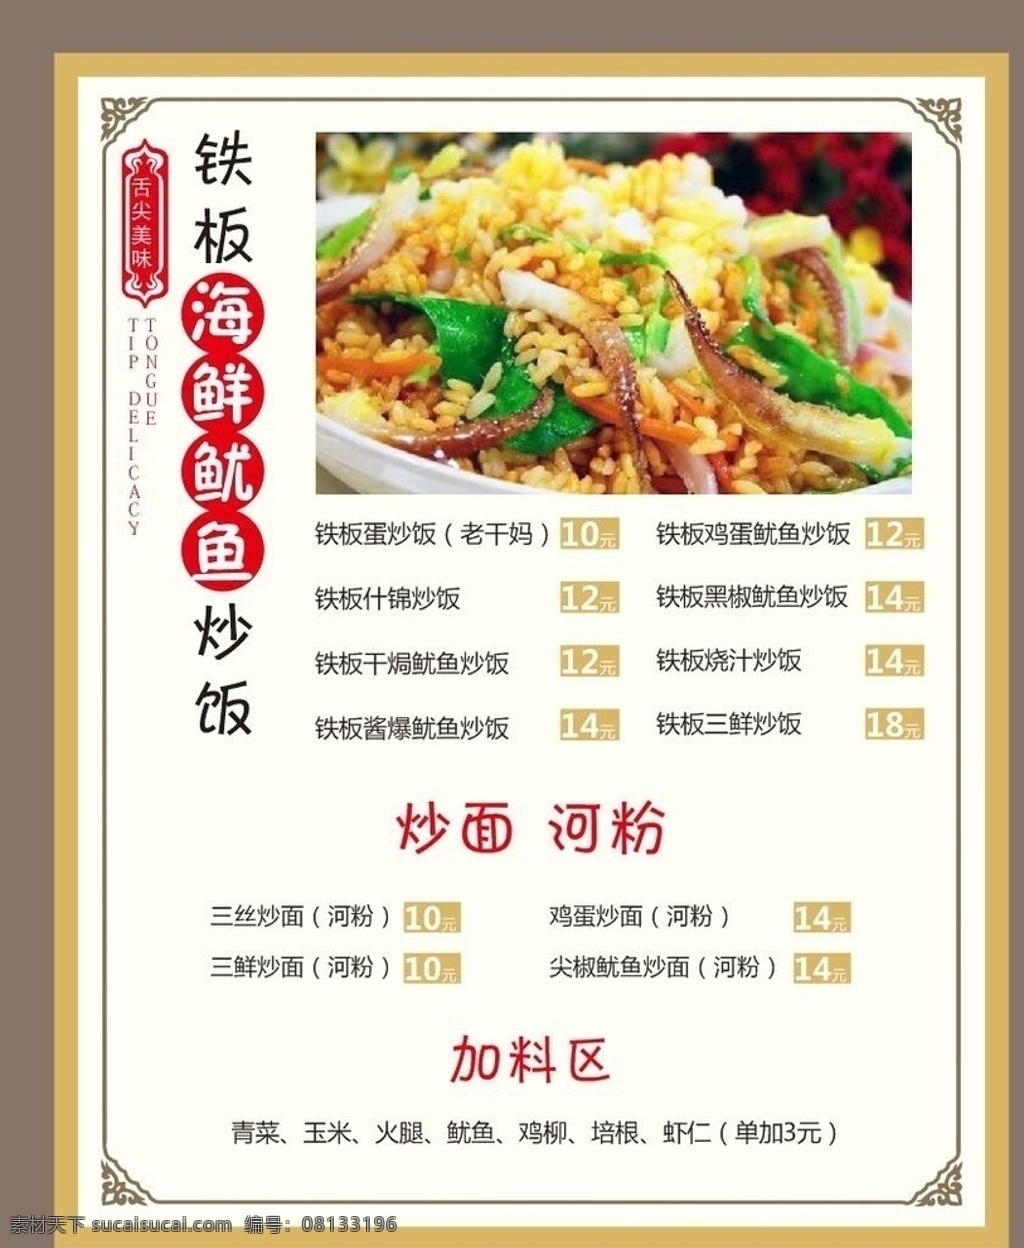 鱿鱼炒饭 铁板鱿鱼 炒饭菜单 餐厅菜单 中国风菜单 大气菜单